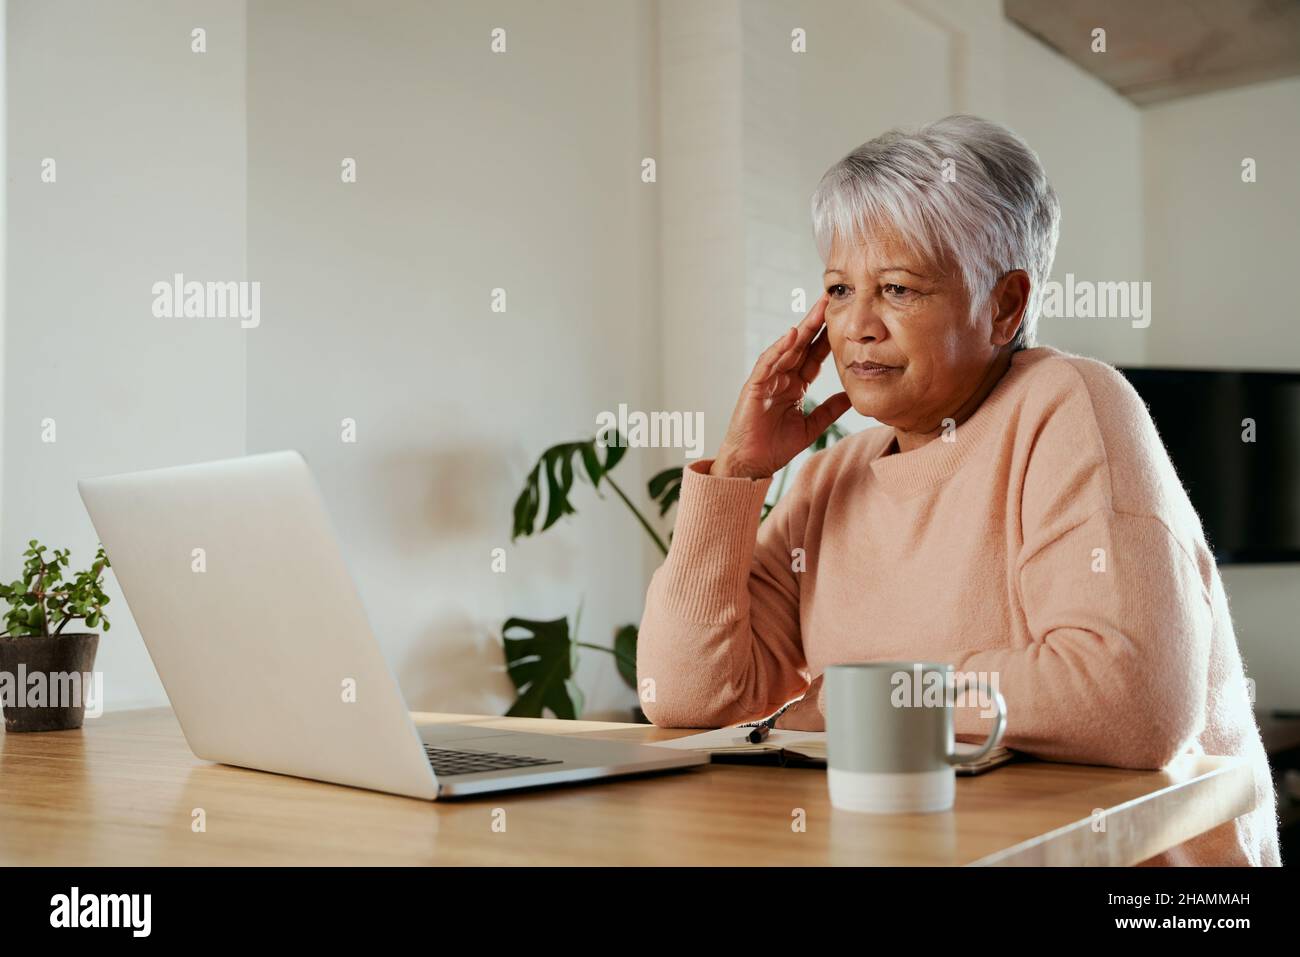 Une femme âgée de plusieurs ethnies s'inquiétait des finances lorsqu'elle regarchait un ordinateur portable.Asseyez-vous avec mal de tête au comptoir de cuisine moderne à la maison. Banque D'Images